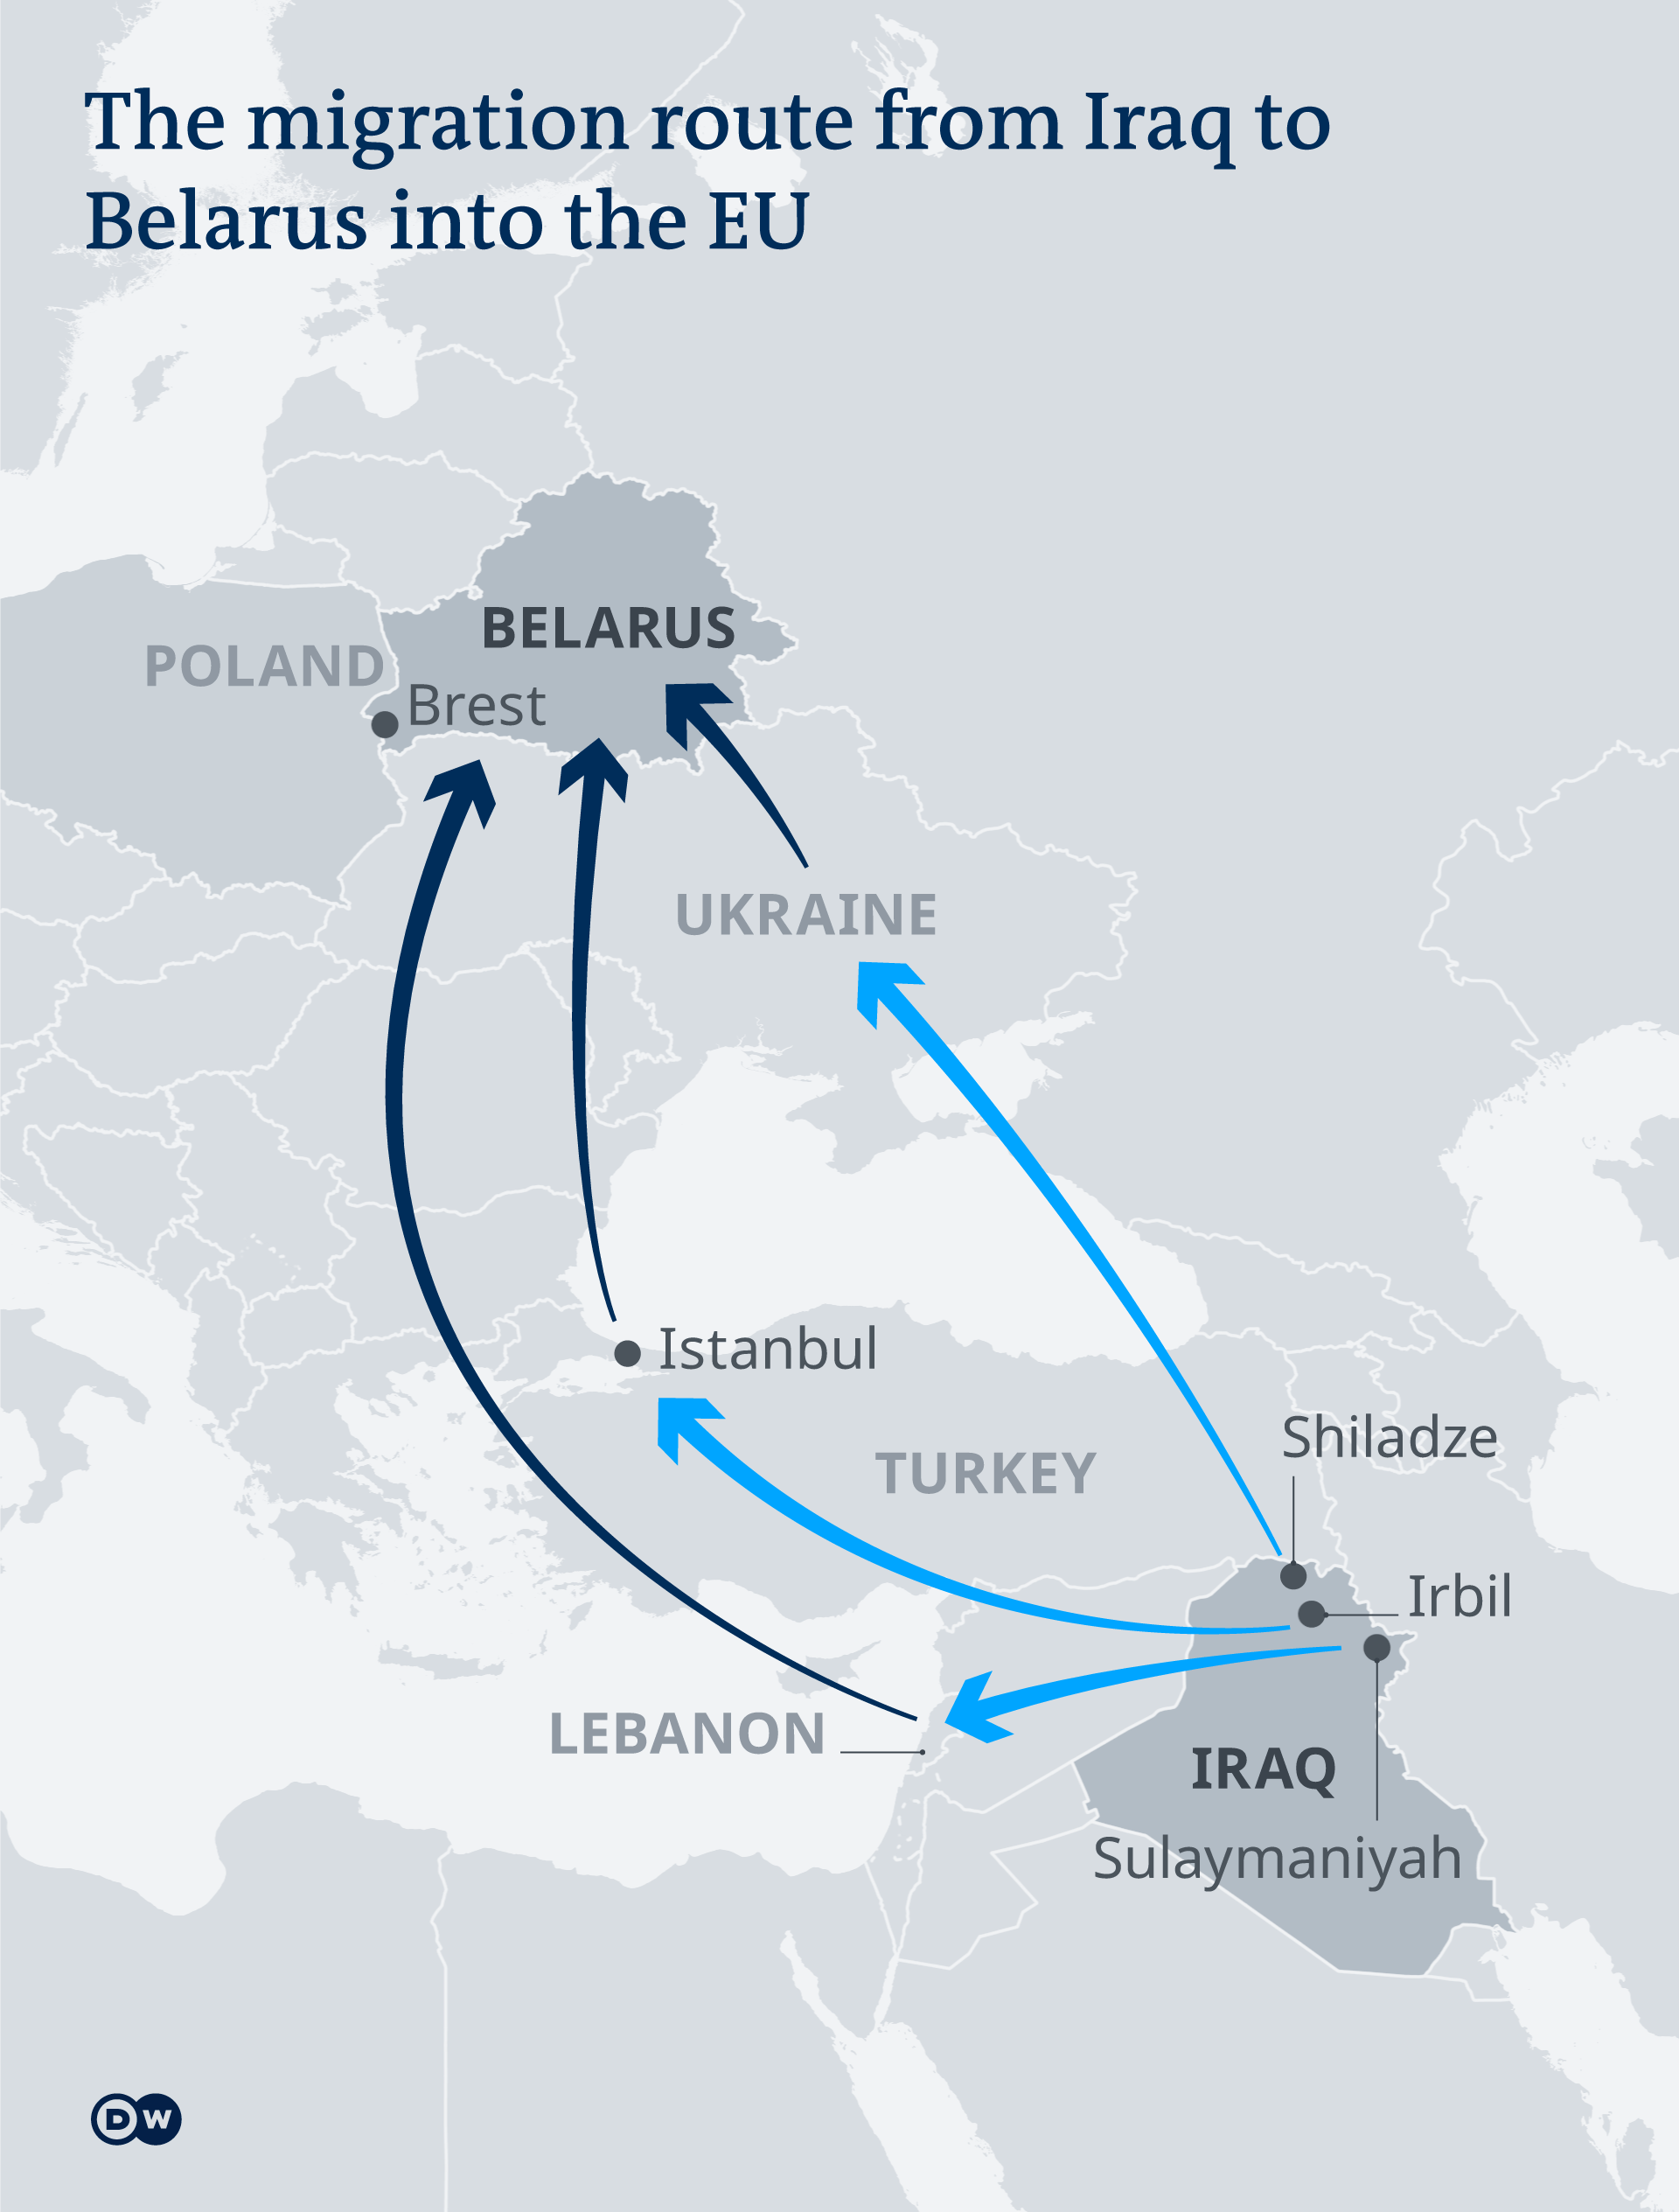 Infografik Migrationsroute von Iraq nach Belarus EN
Infografik Migrationsroute von Iraq nach Belarus EN